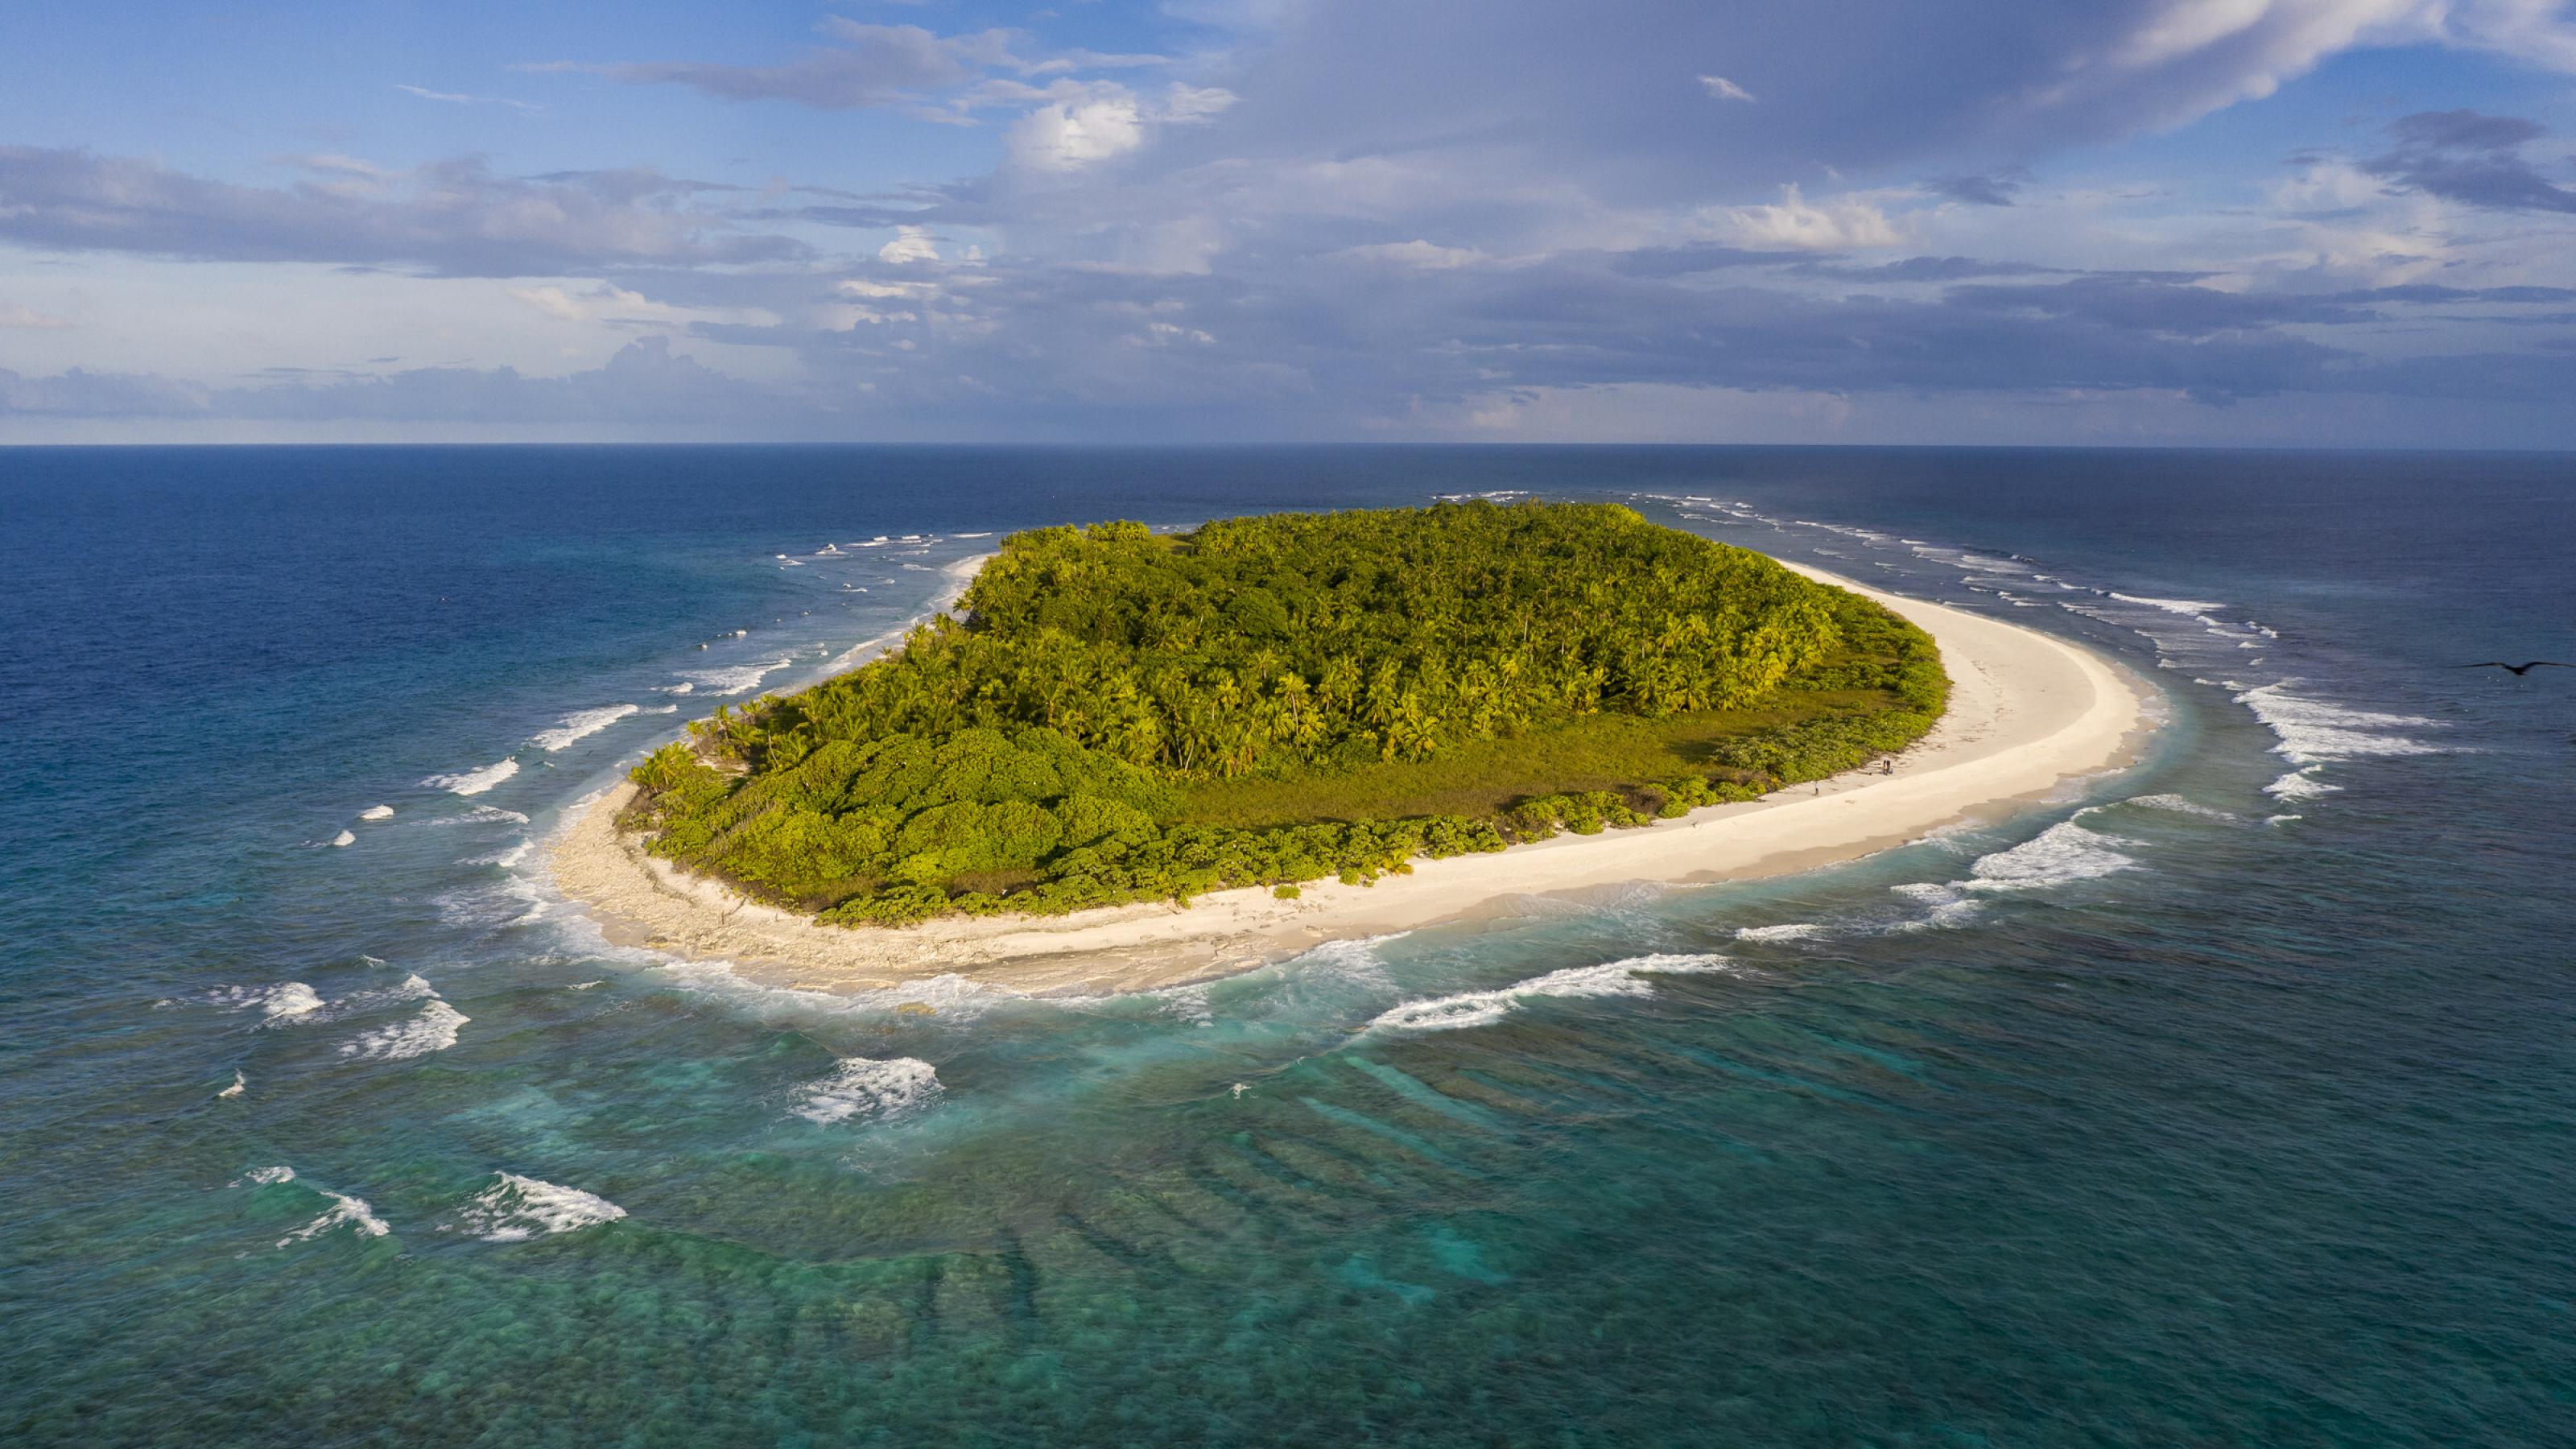 Luftbild einer Insel mit weißem Strand und Palmen im blauen Meer.